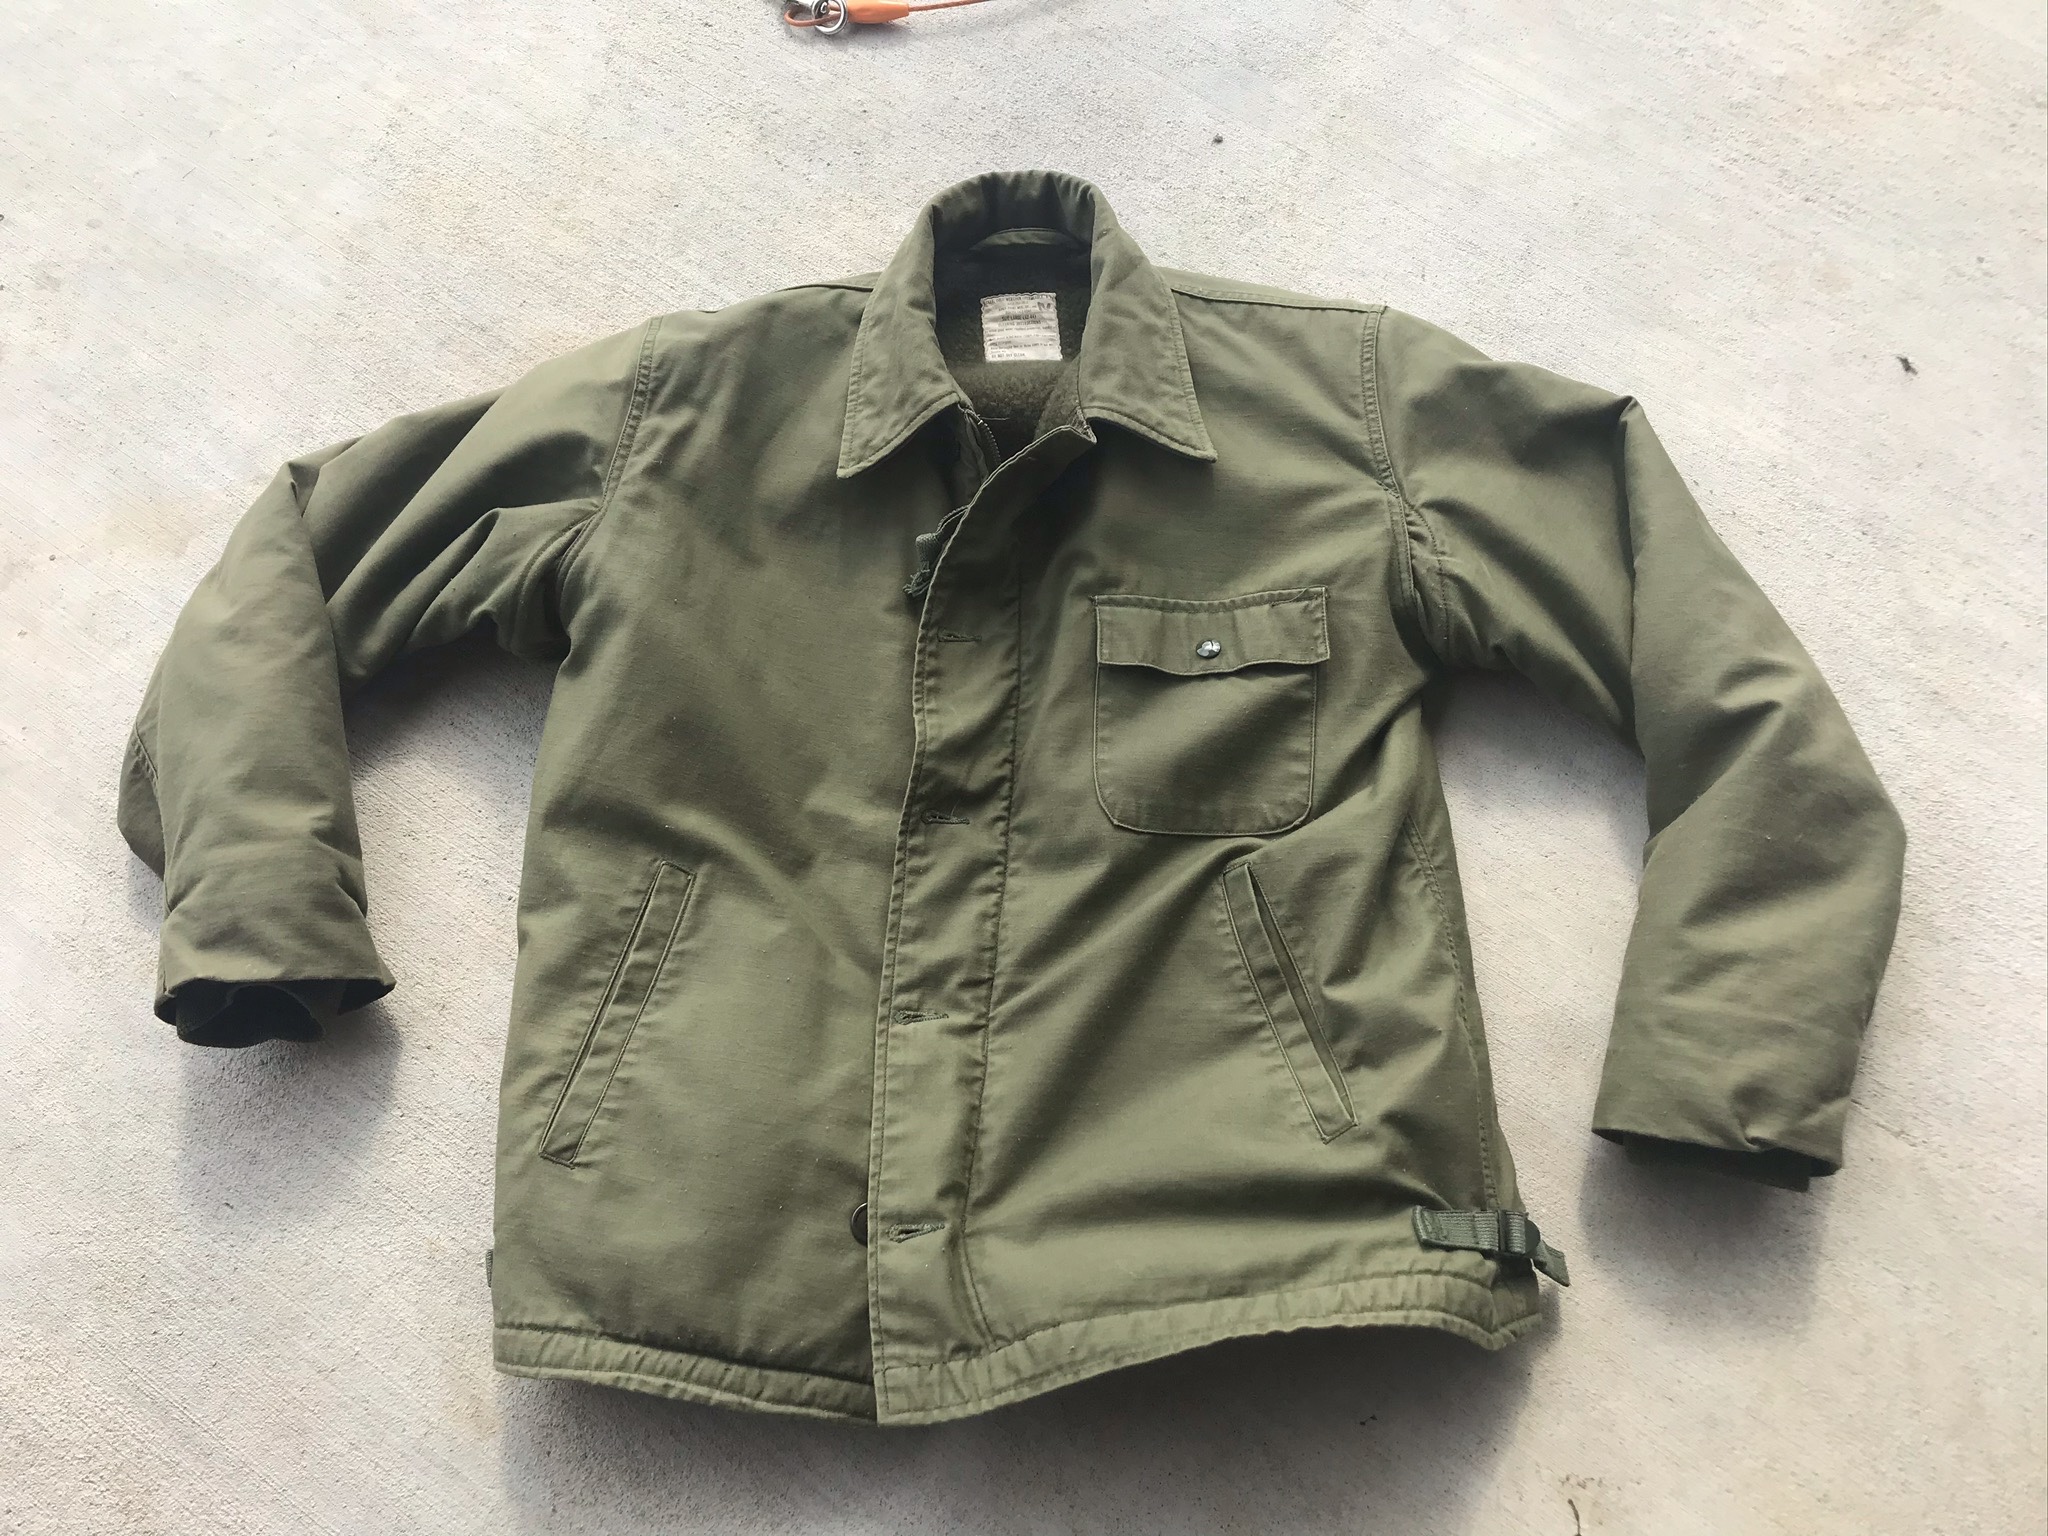 For Sale Original USN A-2 Deck jacket (1974) Size Large 42-44